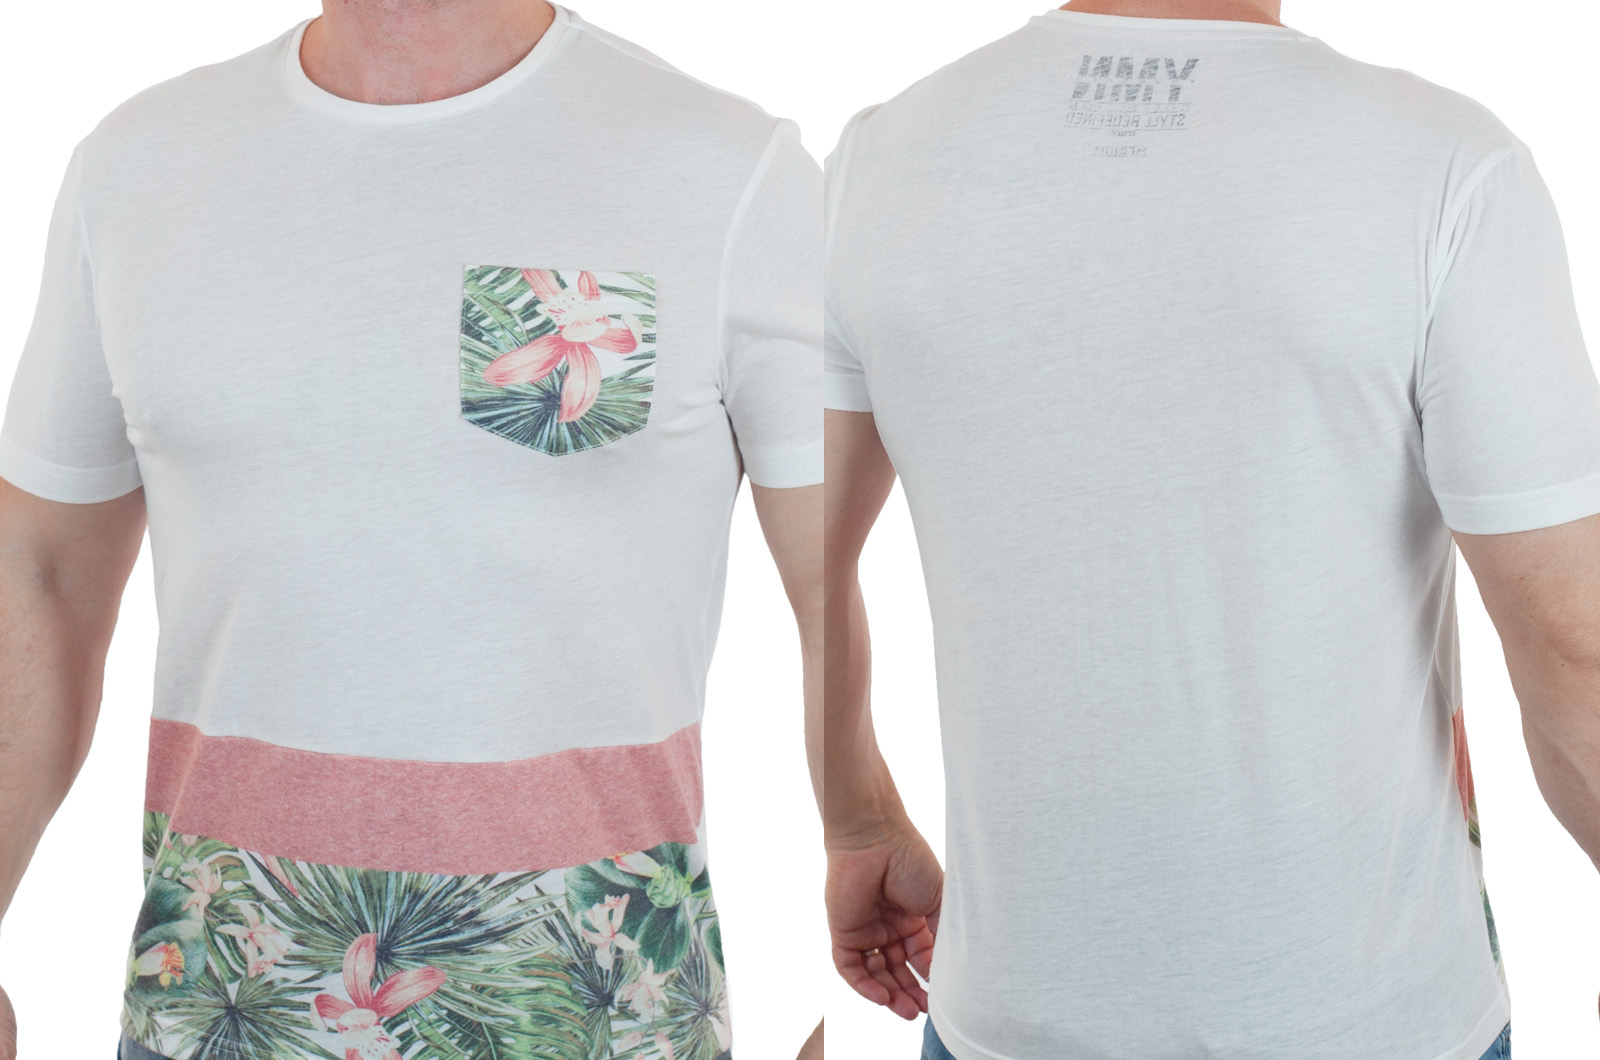 Заказать  футболку с летним принтом от Max Youngmen по привлекательной цене